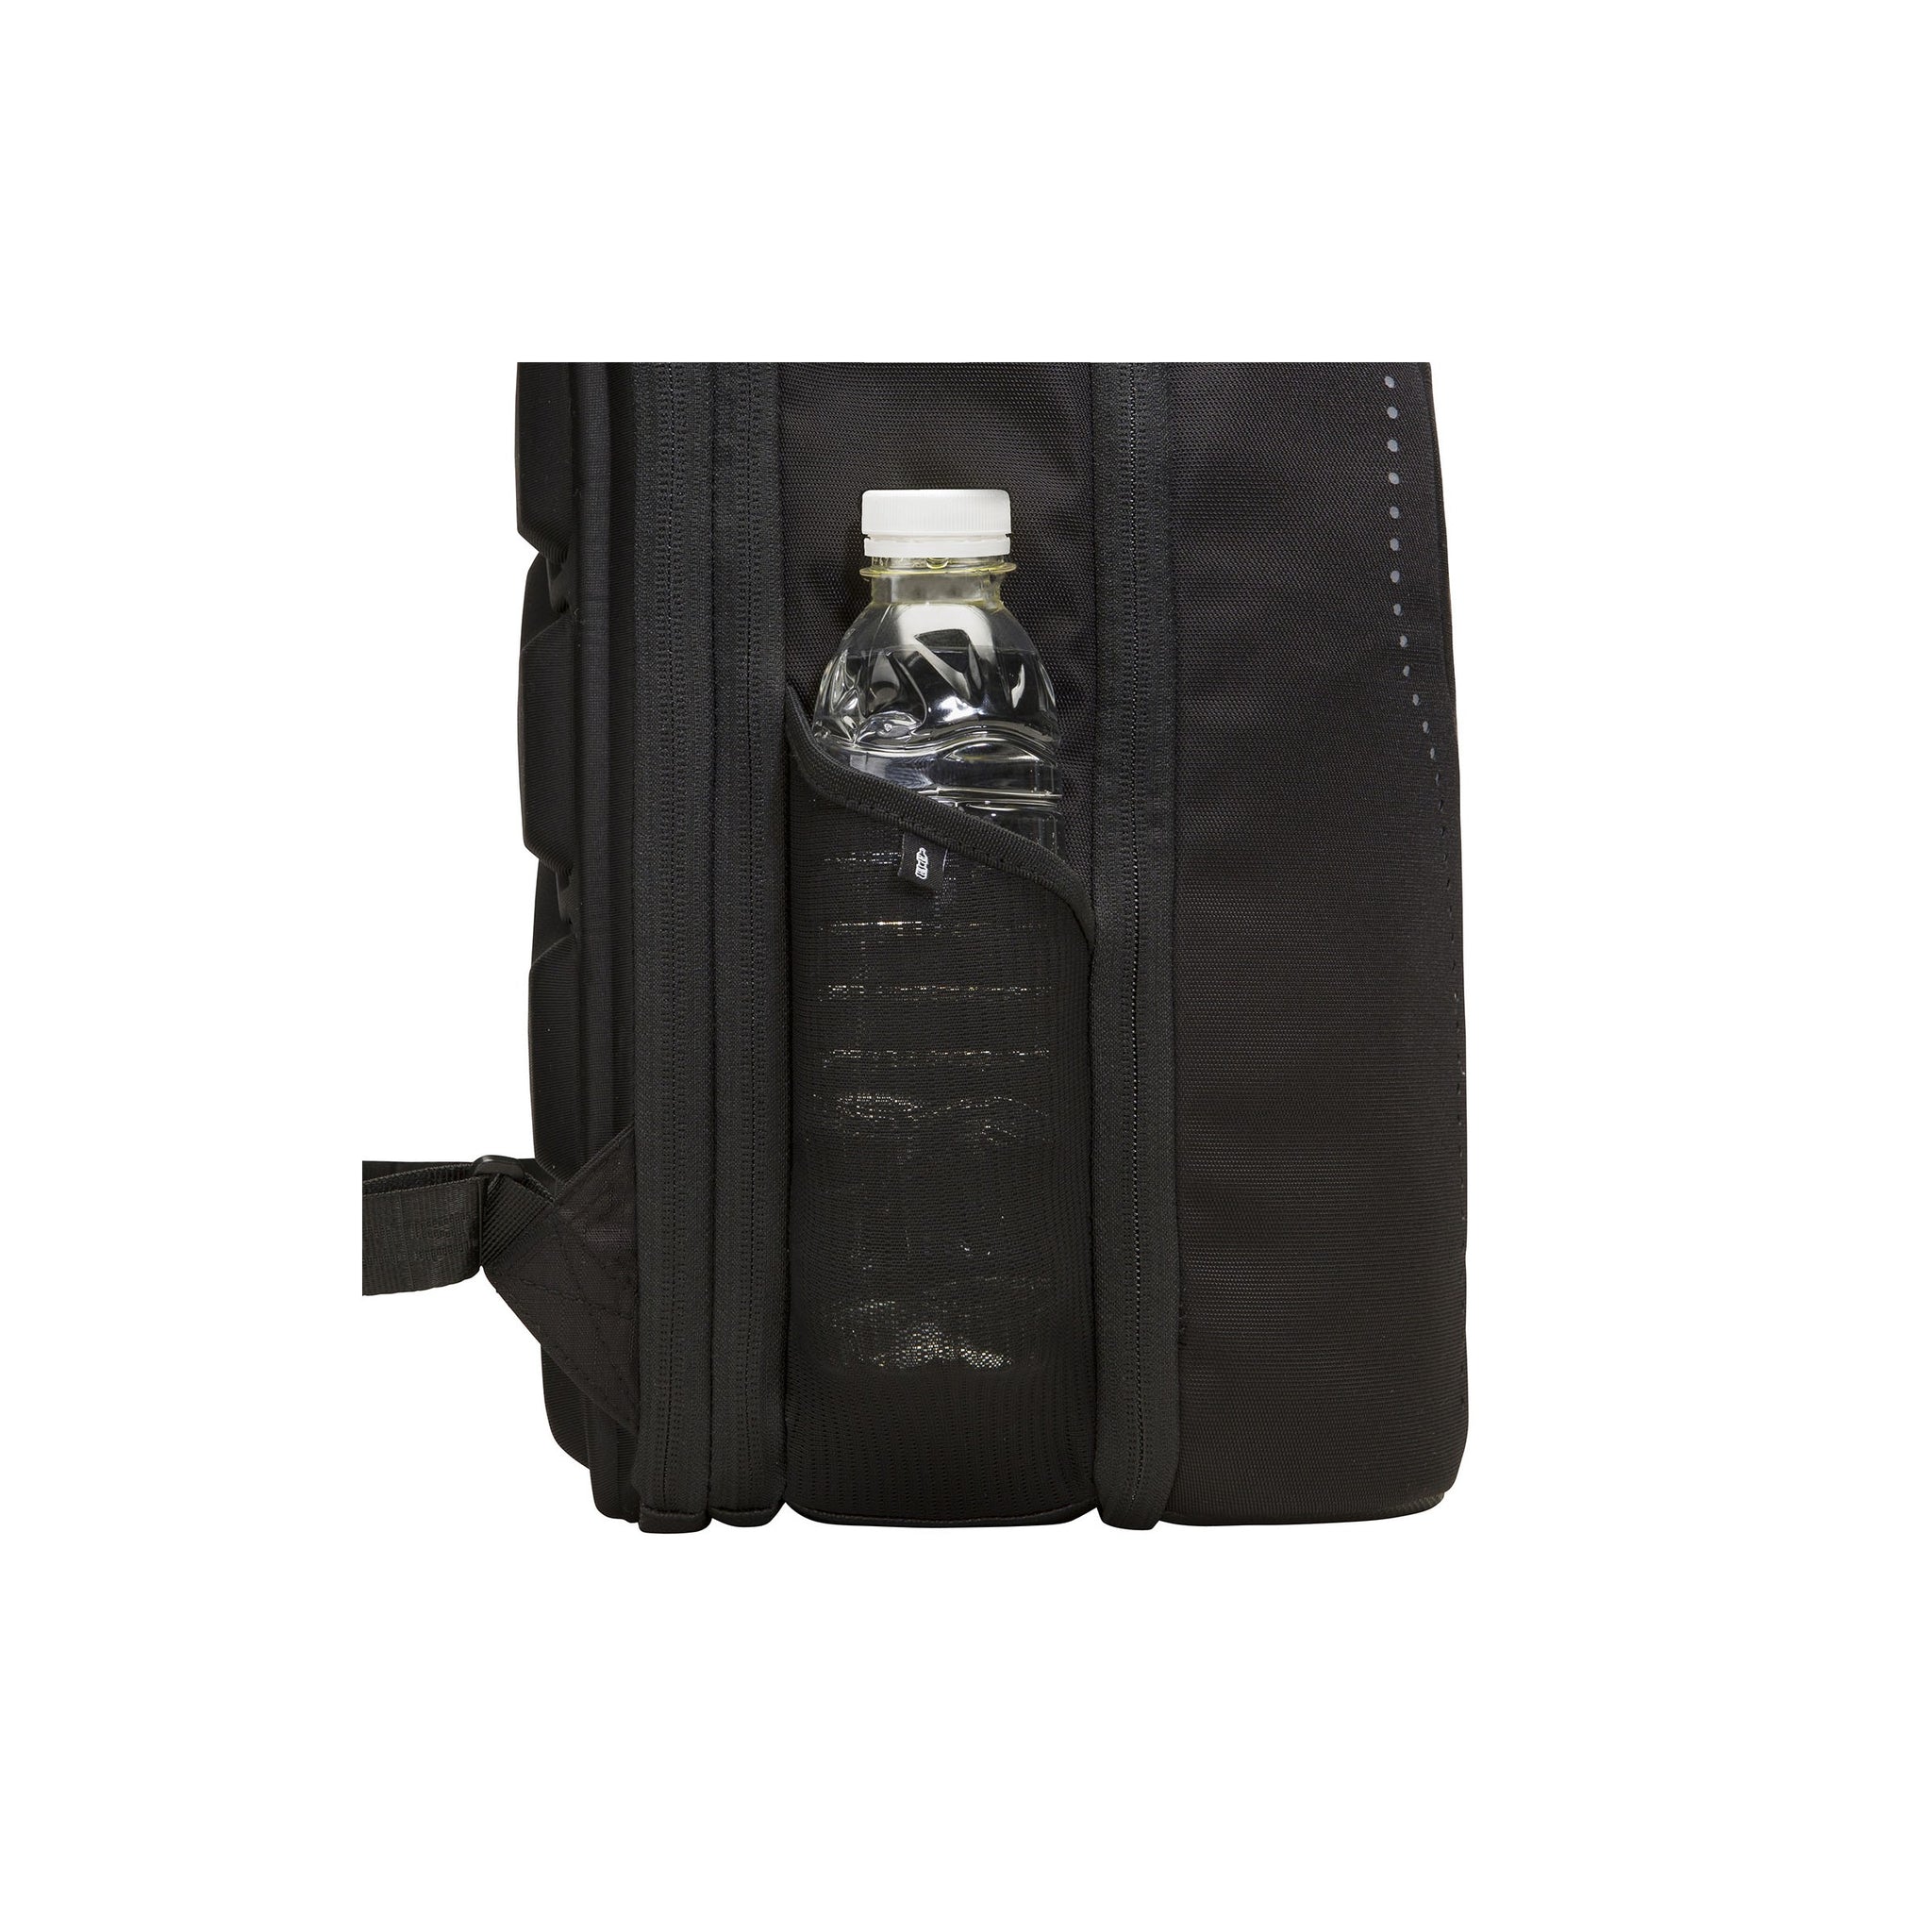 MUB TRAVELER MEDIUM Jet Black - The BiarritzI Deluxe Travel Backpack for Men